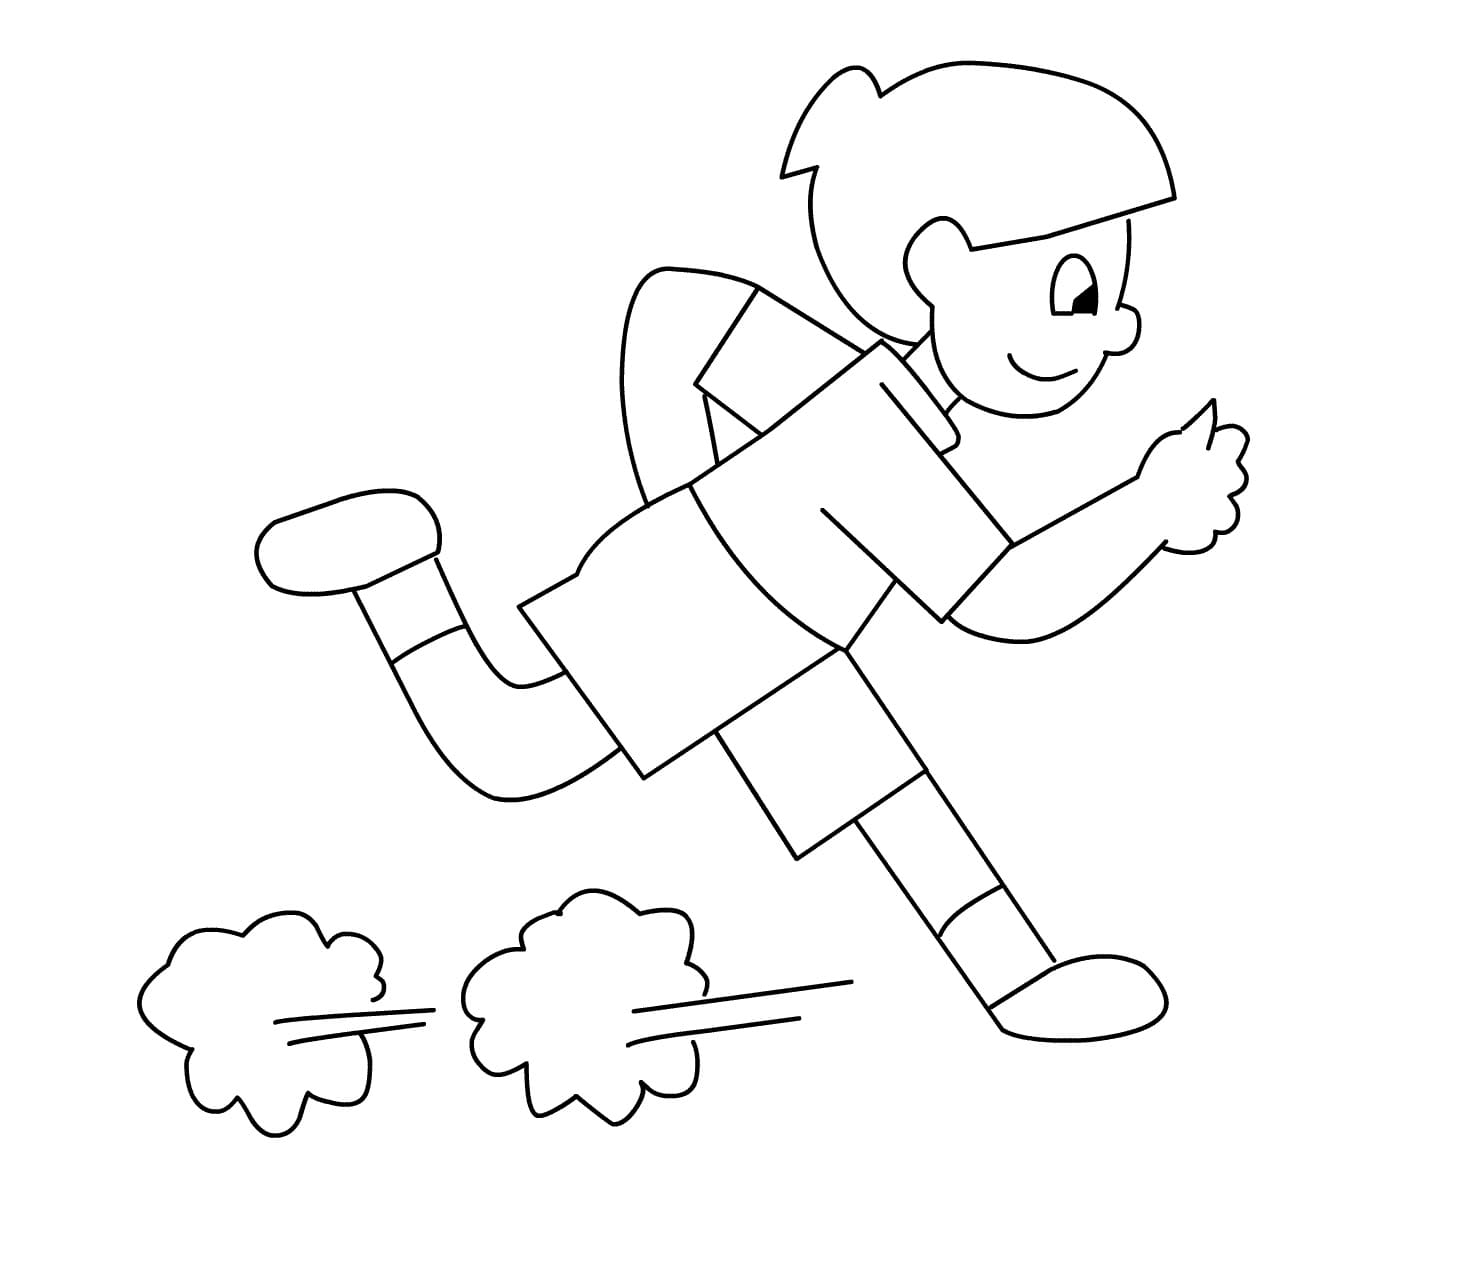 Как нарисовать человека который бежит